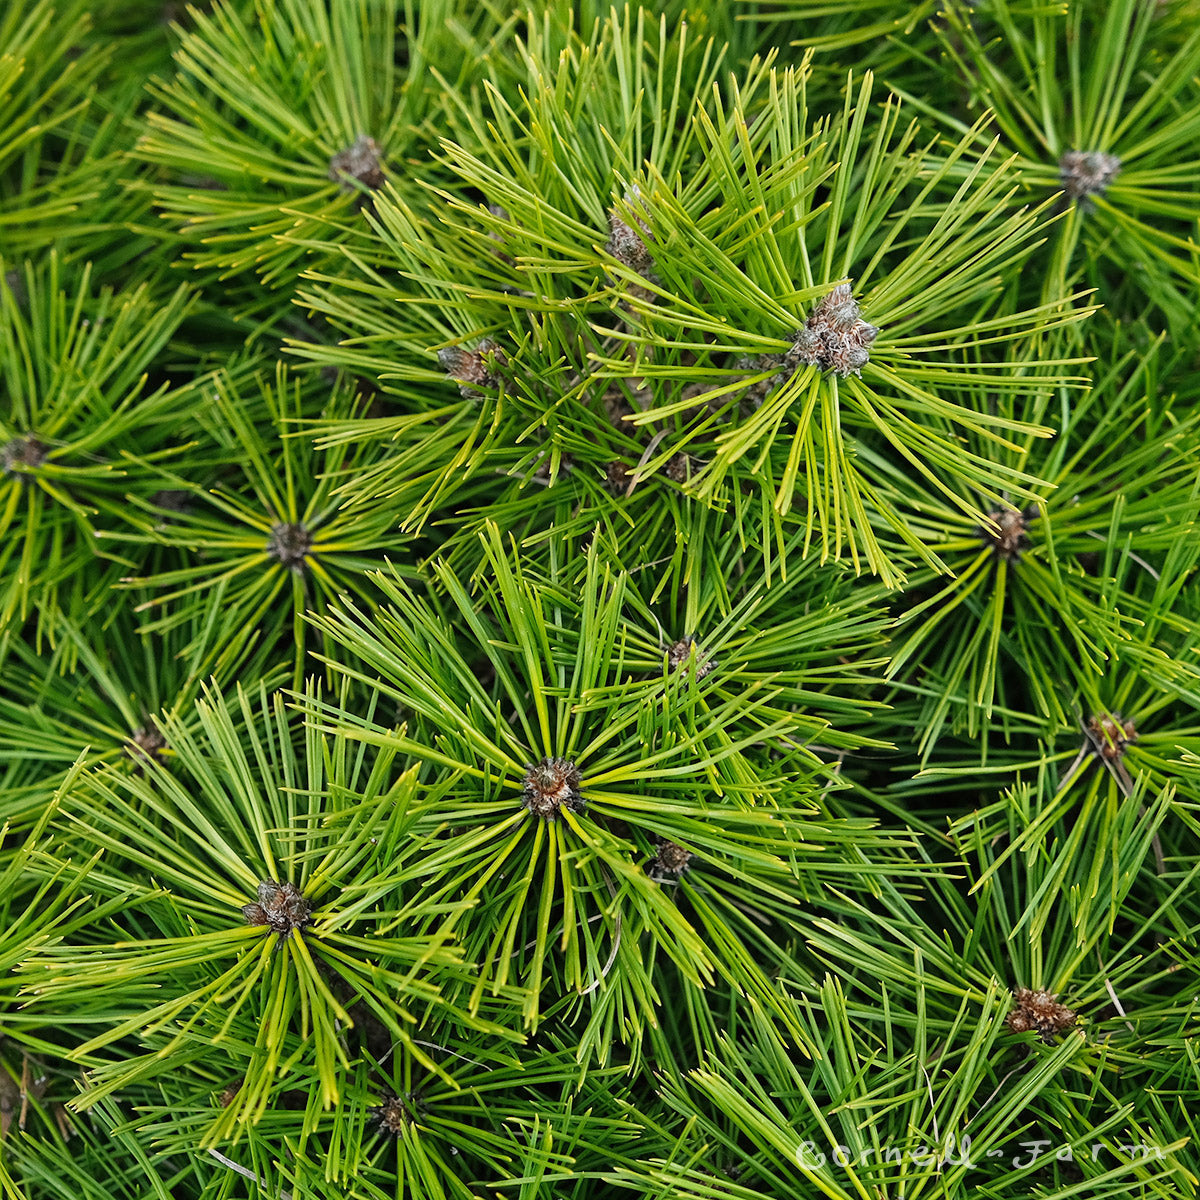 Pinus densiflora Jane Kluis 3gal